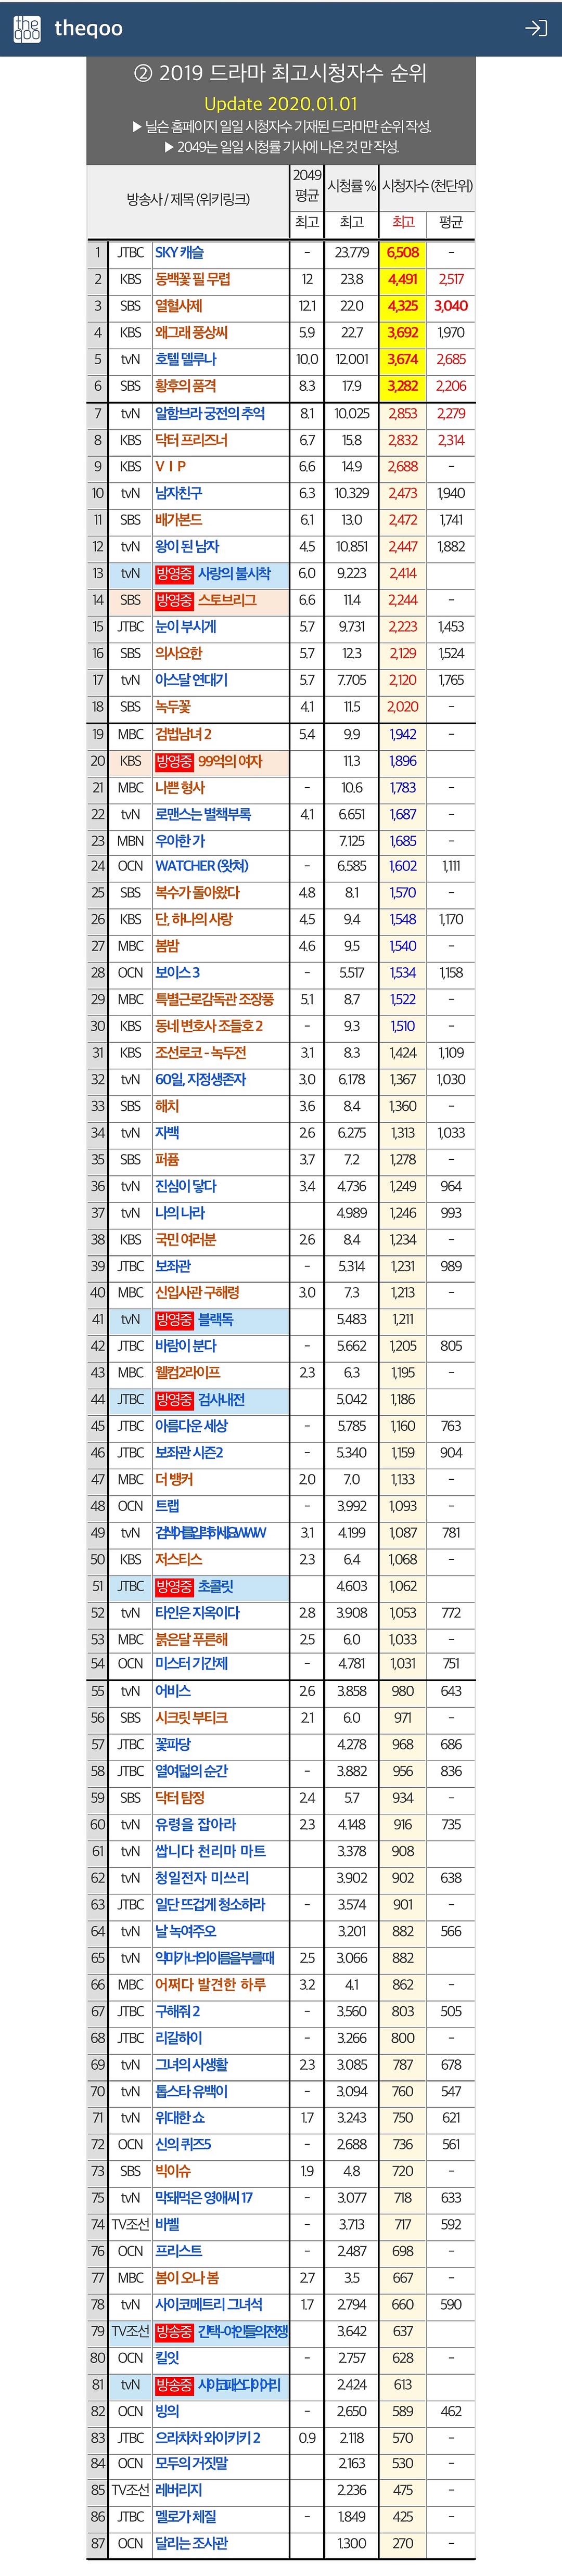 宫斗电视剧排行榜前十名_2014福布斯全球亿万富豪榜前100名_2012娱乐名人榜前100名